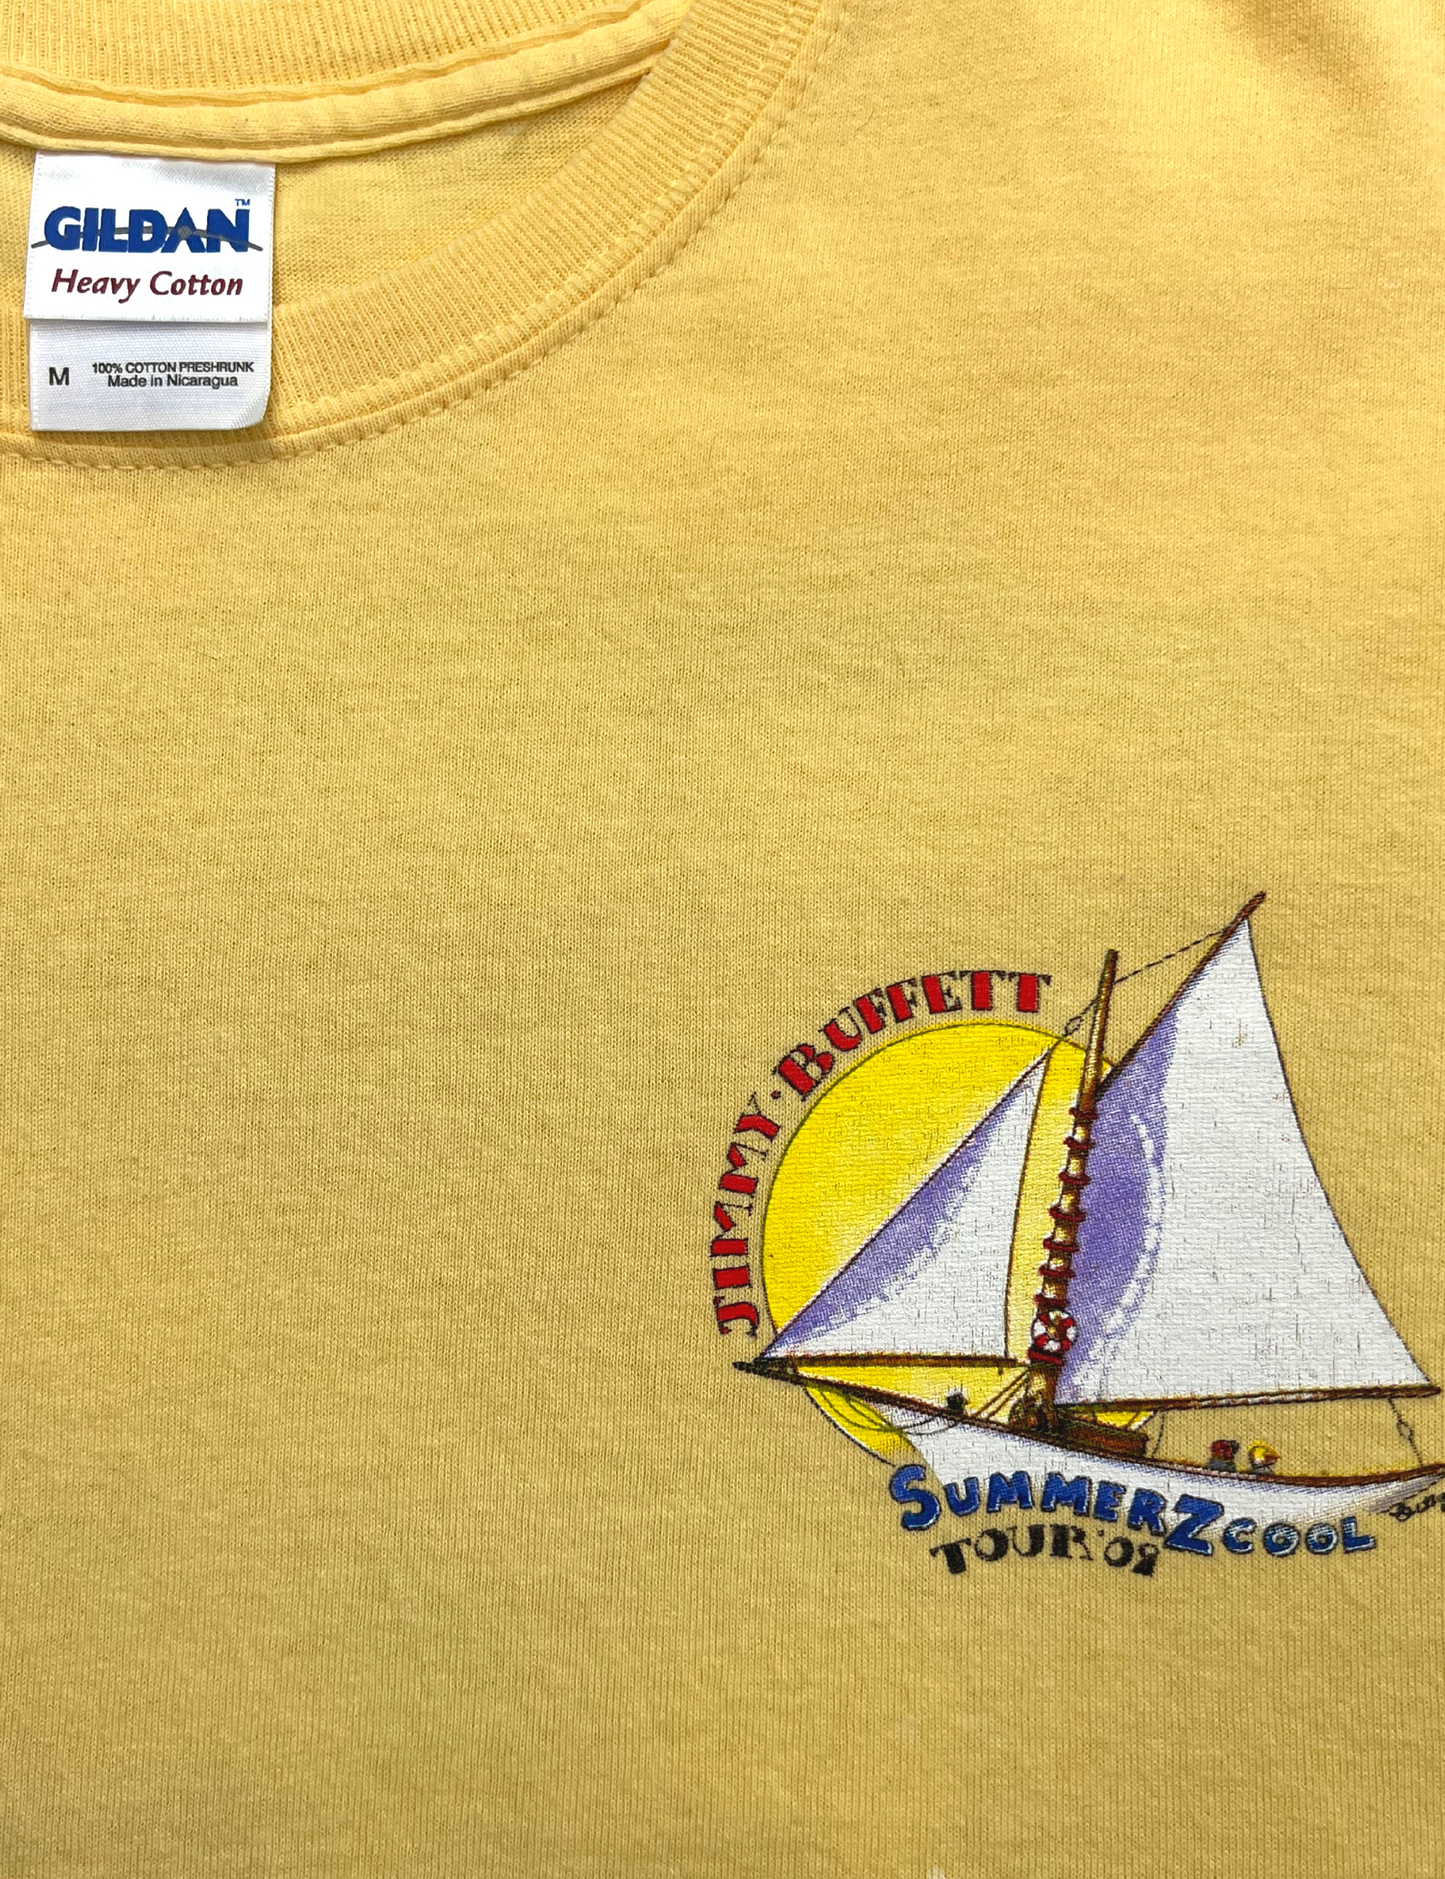 2009 Jimmy Buffet Summer Z Cool Concert T-shirt Size M